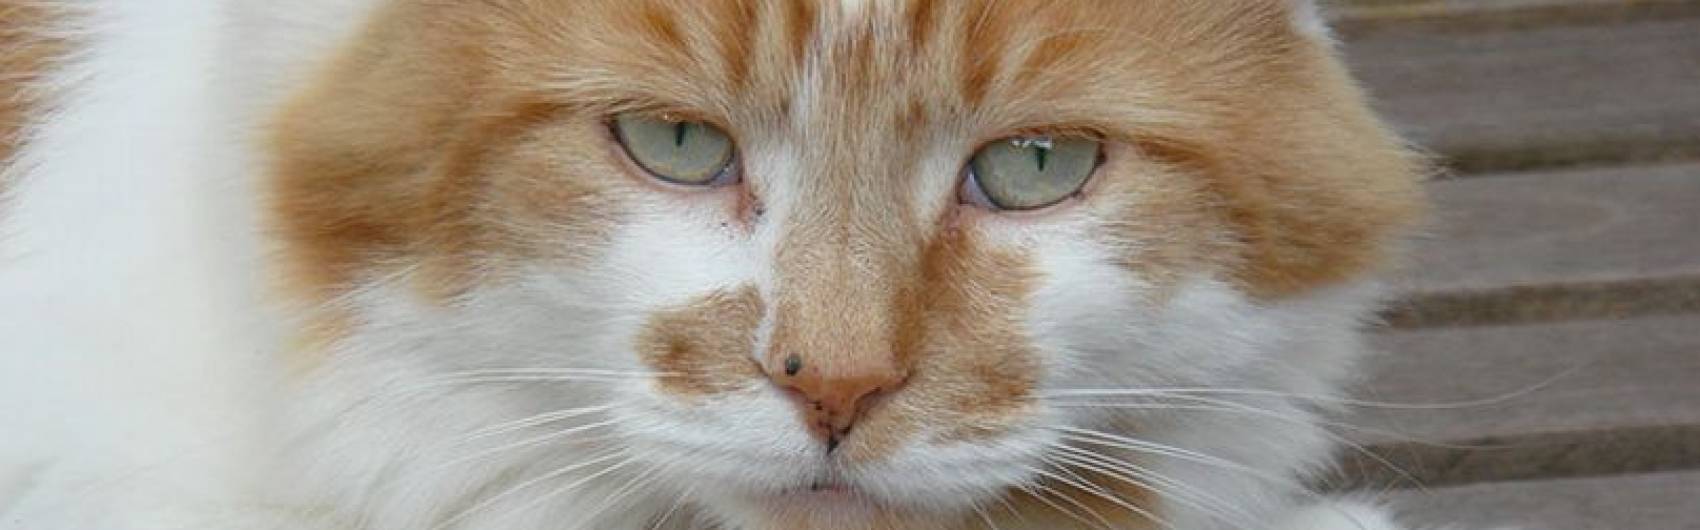 Oudste kat ter wereld gestorven